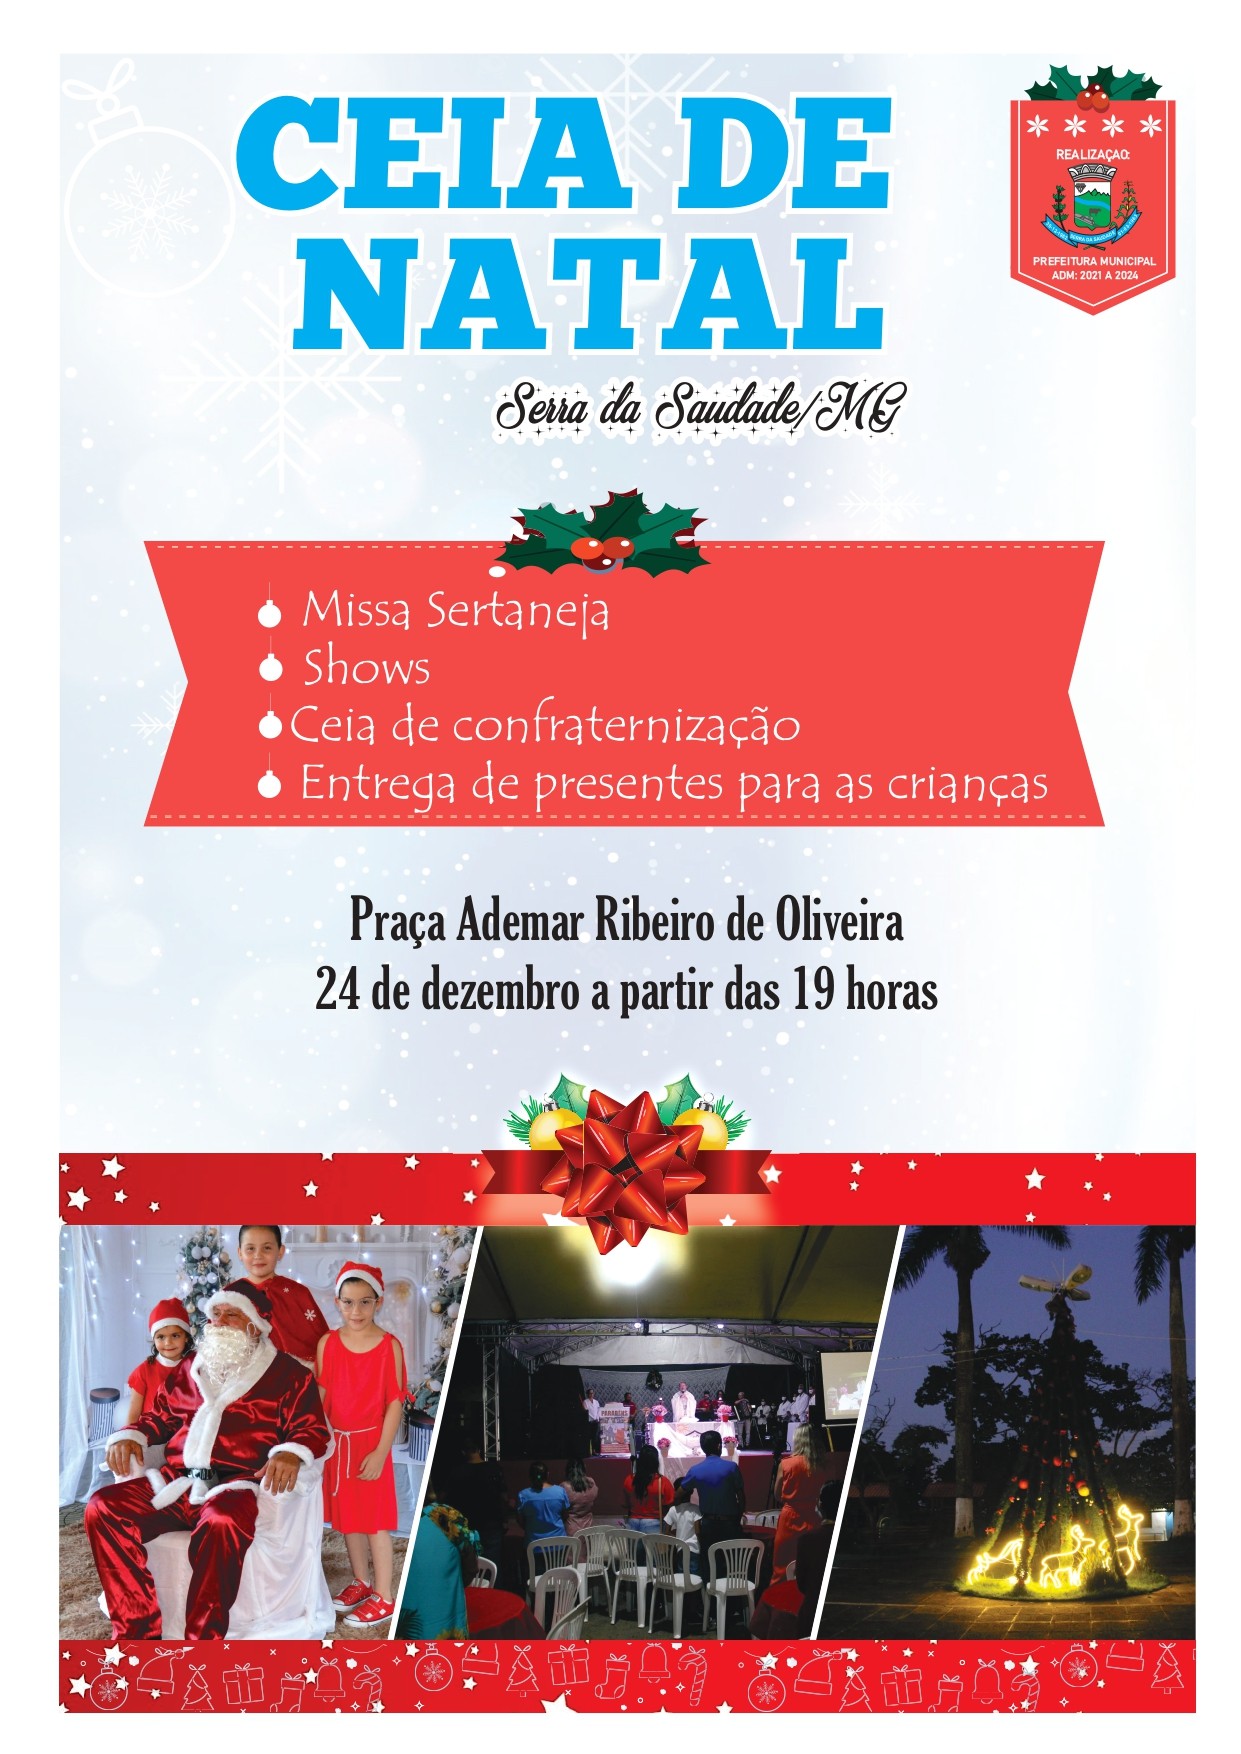 Portal Minas Gerais - Eventos: CEIA DE NATAL